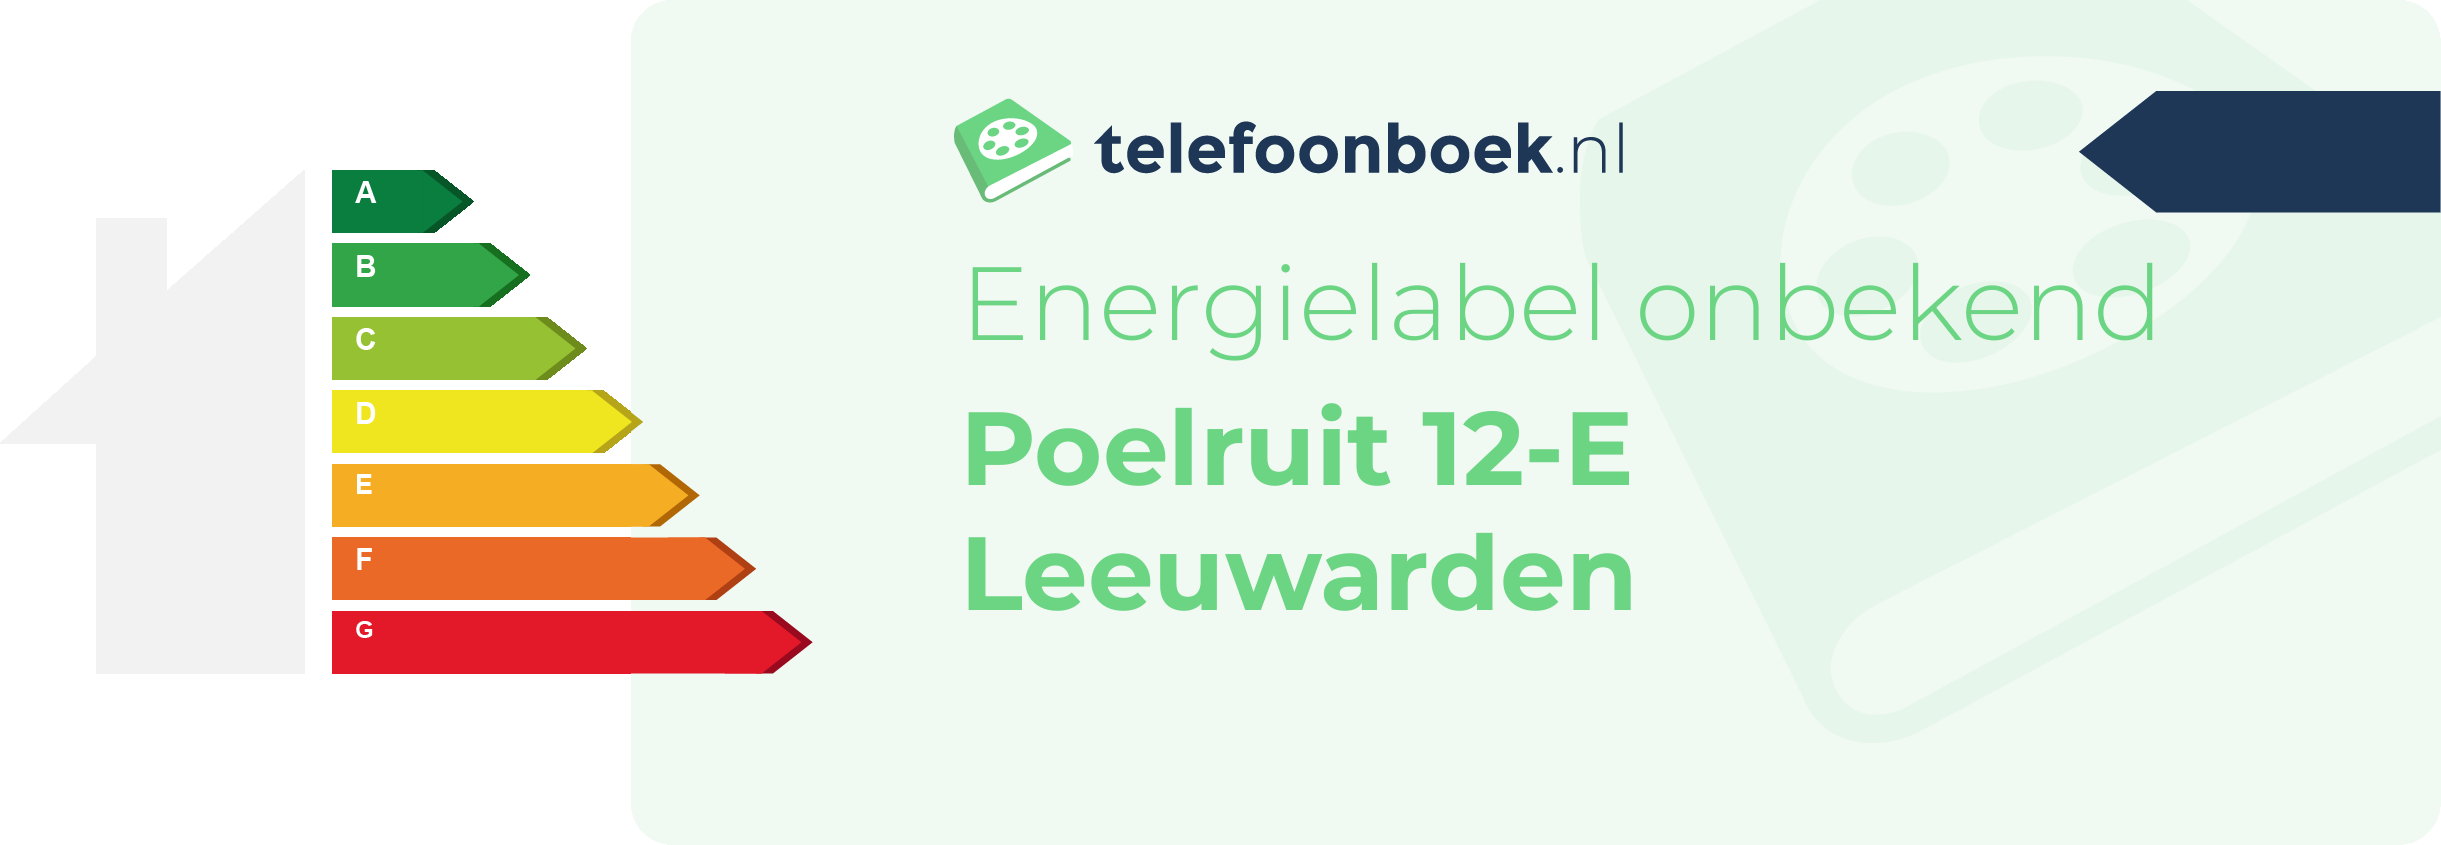 Energielabel Poelruit 12-E Leeuwarden